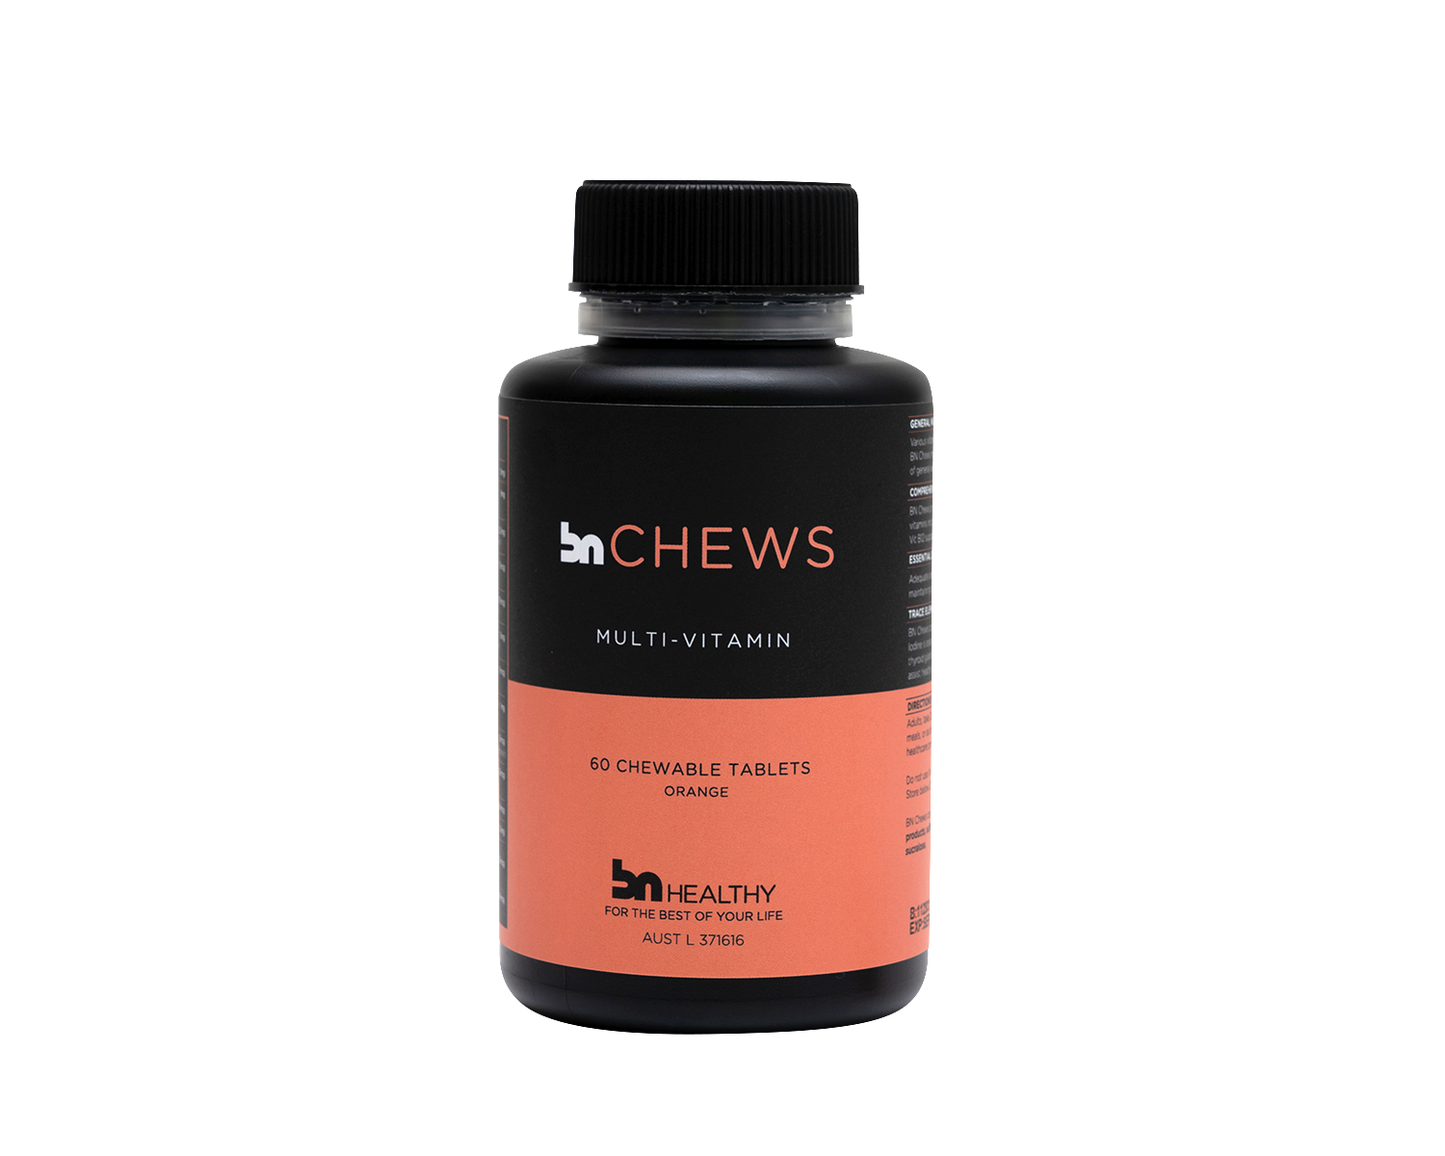 BN Chews - Chewable Multivitamins - 3 Bottles - Save 15%